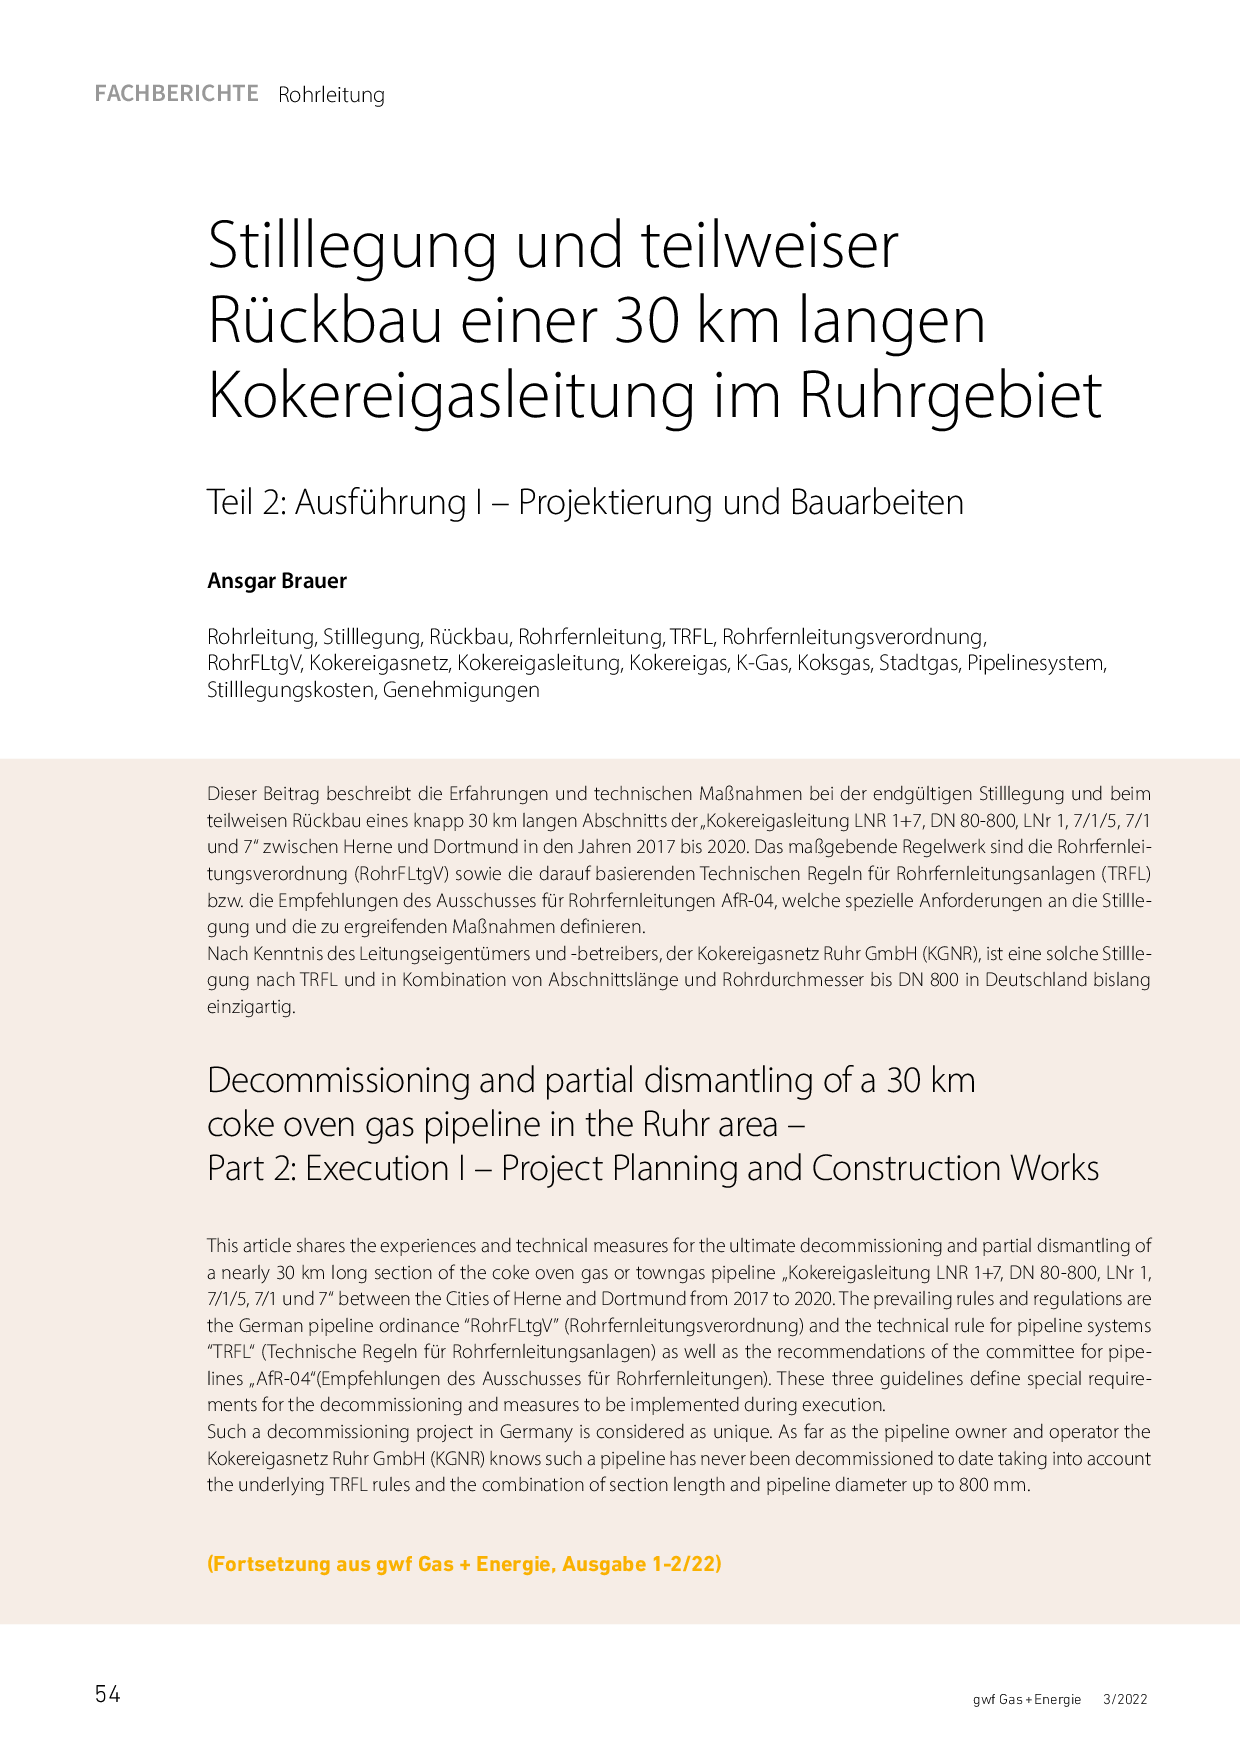 Stilllegung und teilweiser Rückbau einer 30 km langen Kokereigasleitung im Ruhrgebiet